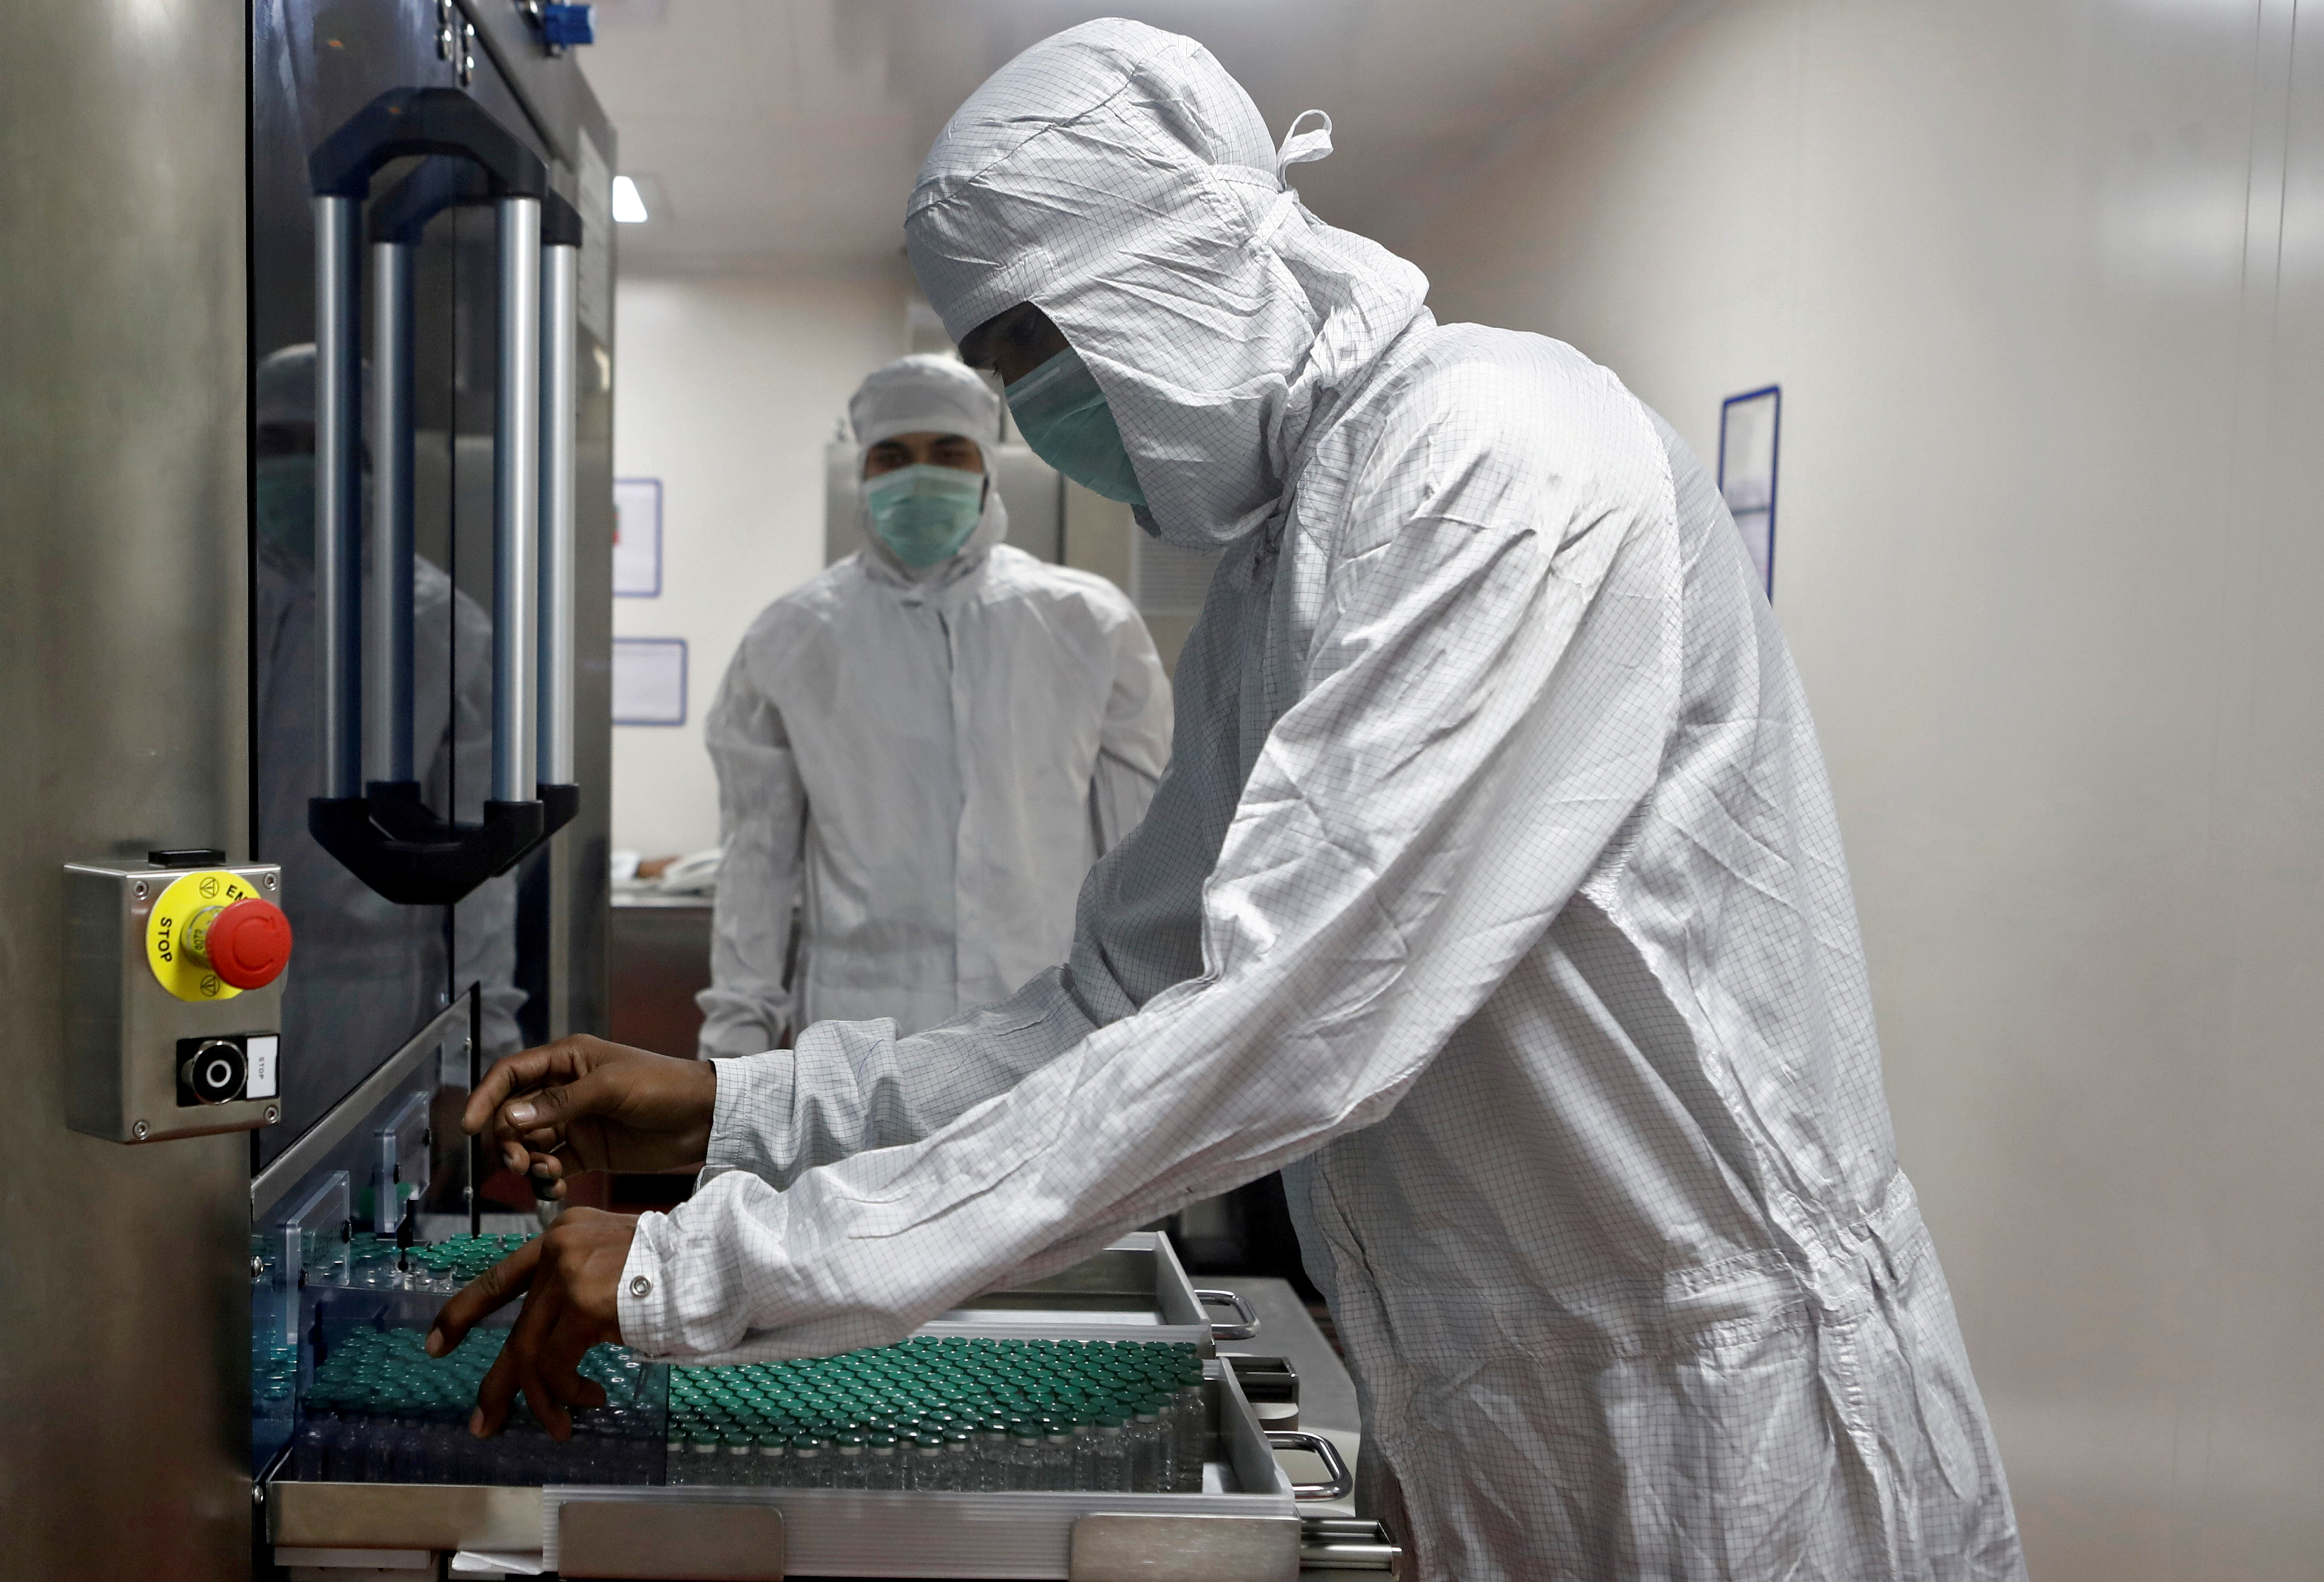 Corea del Sur comenzará a vacunar contra el coronavirus el #26Feb